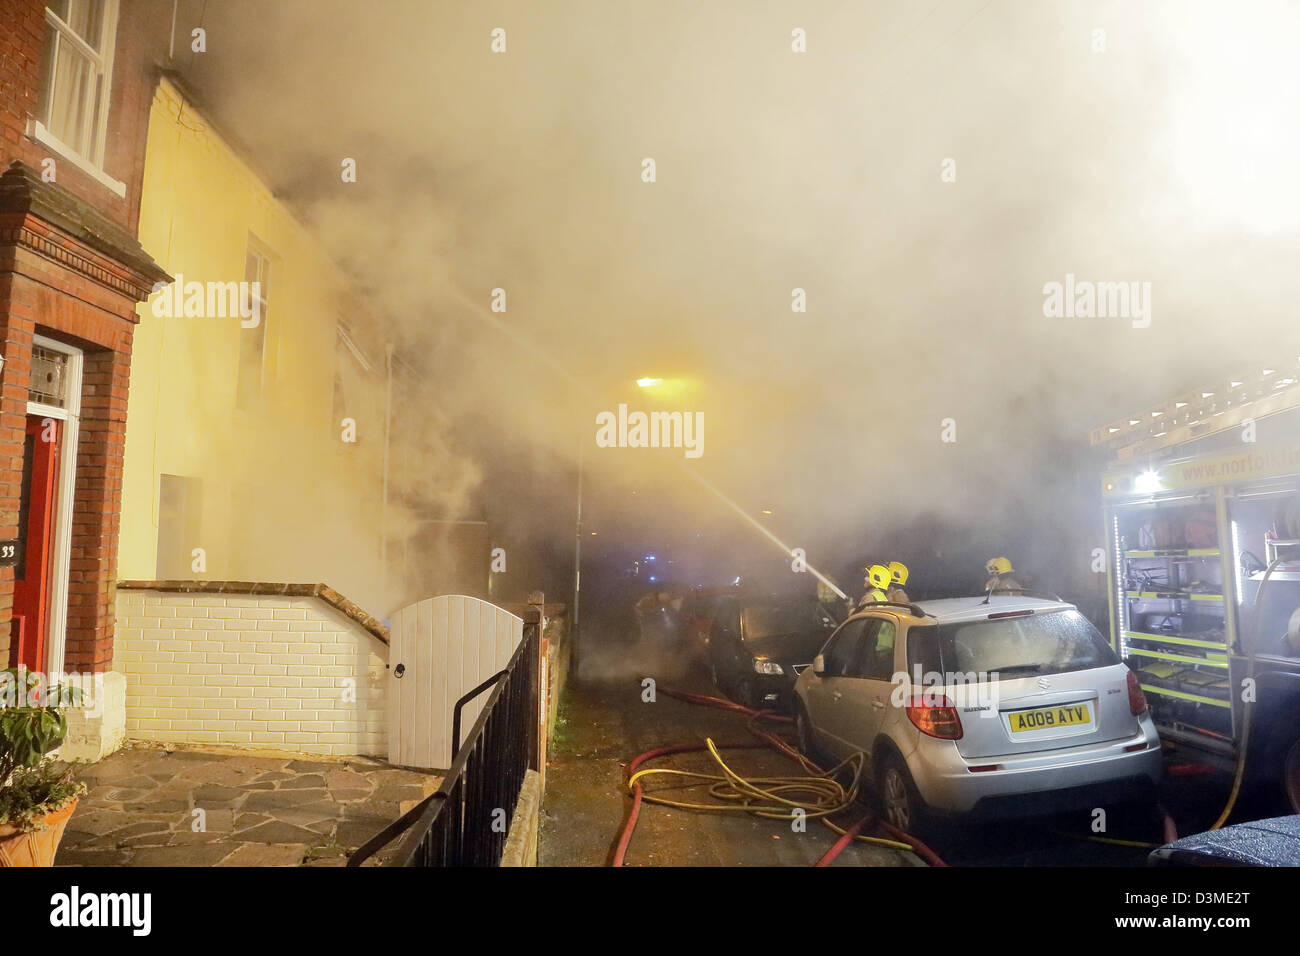 Les pompiers éteindre un incendie dans une maison à Norwich, Angleterre, Royaume-Uni. Banque D'Images